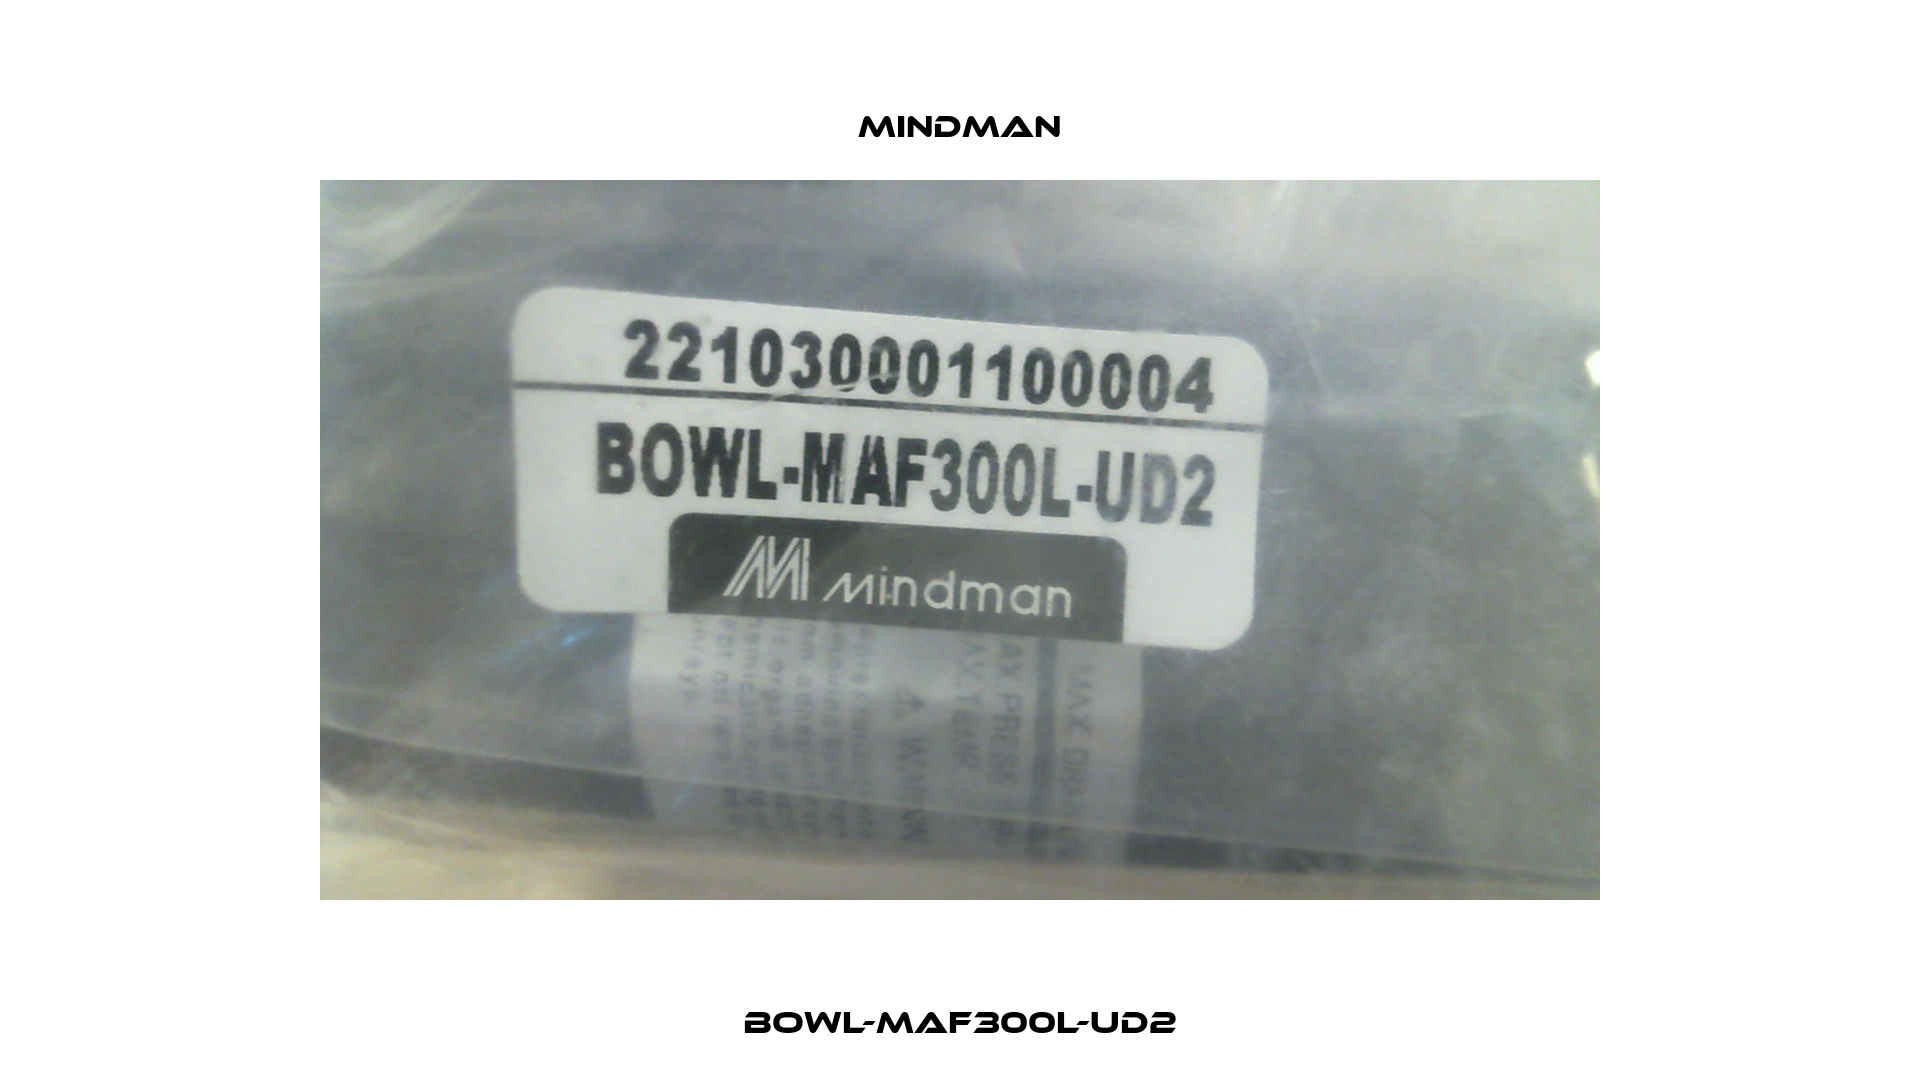 BOWL-MAF300L-UD2 Mindman